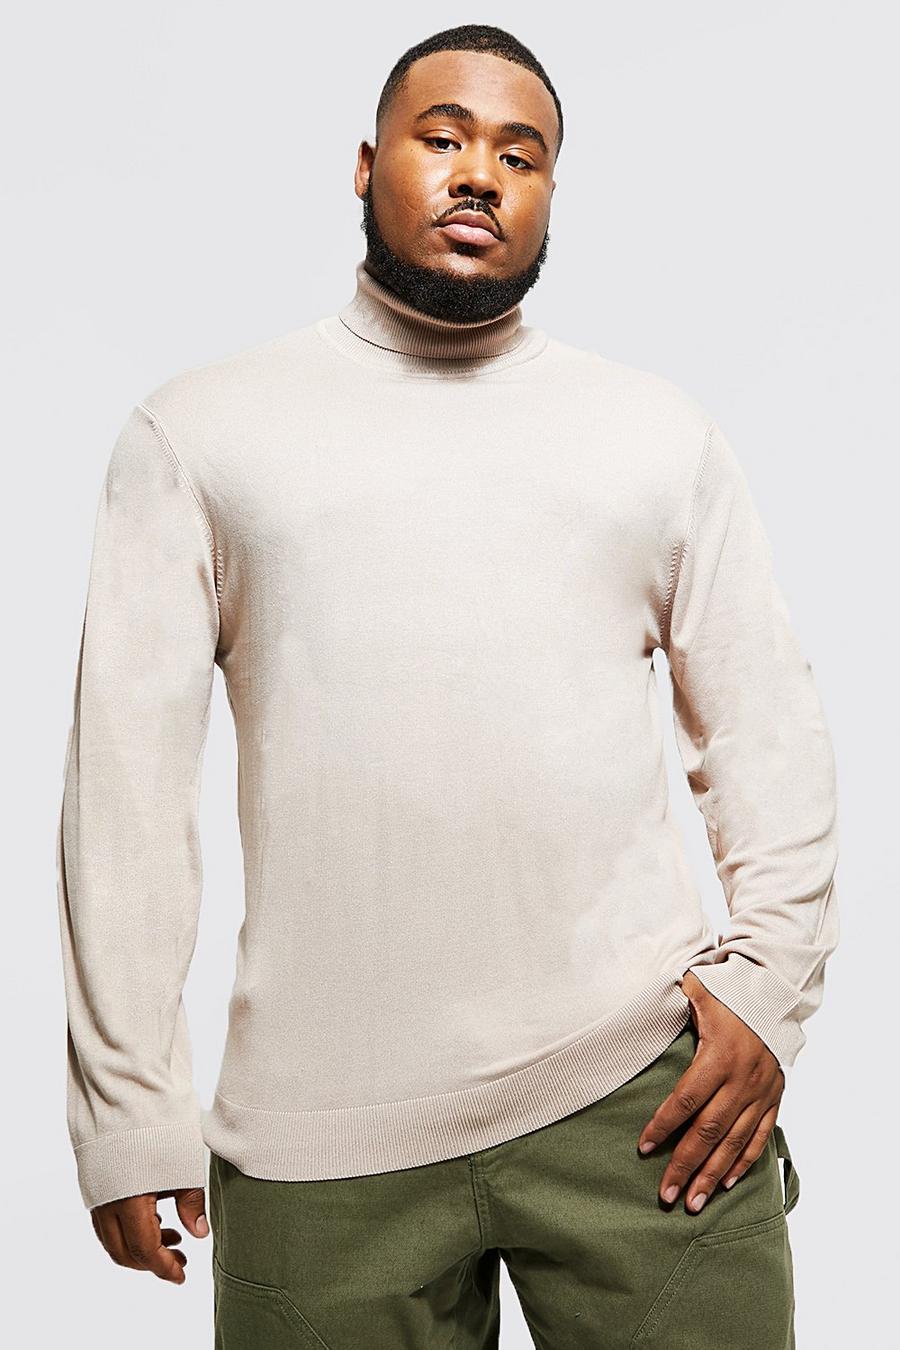 אפור חום beige סוודר בגזרה רגילה מחומרים ממוחזרים עם צווארון נגלל למידות גדולות